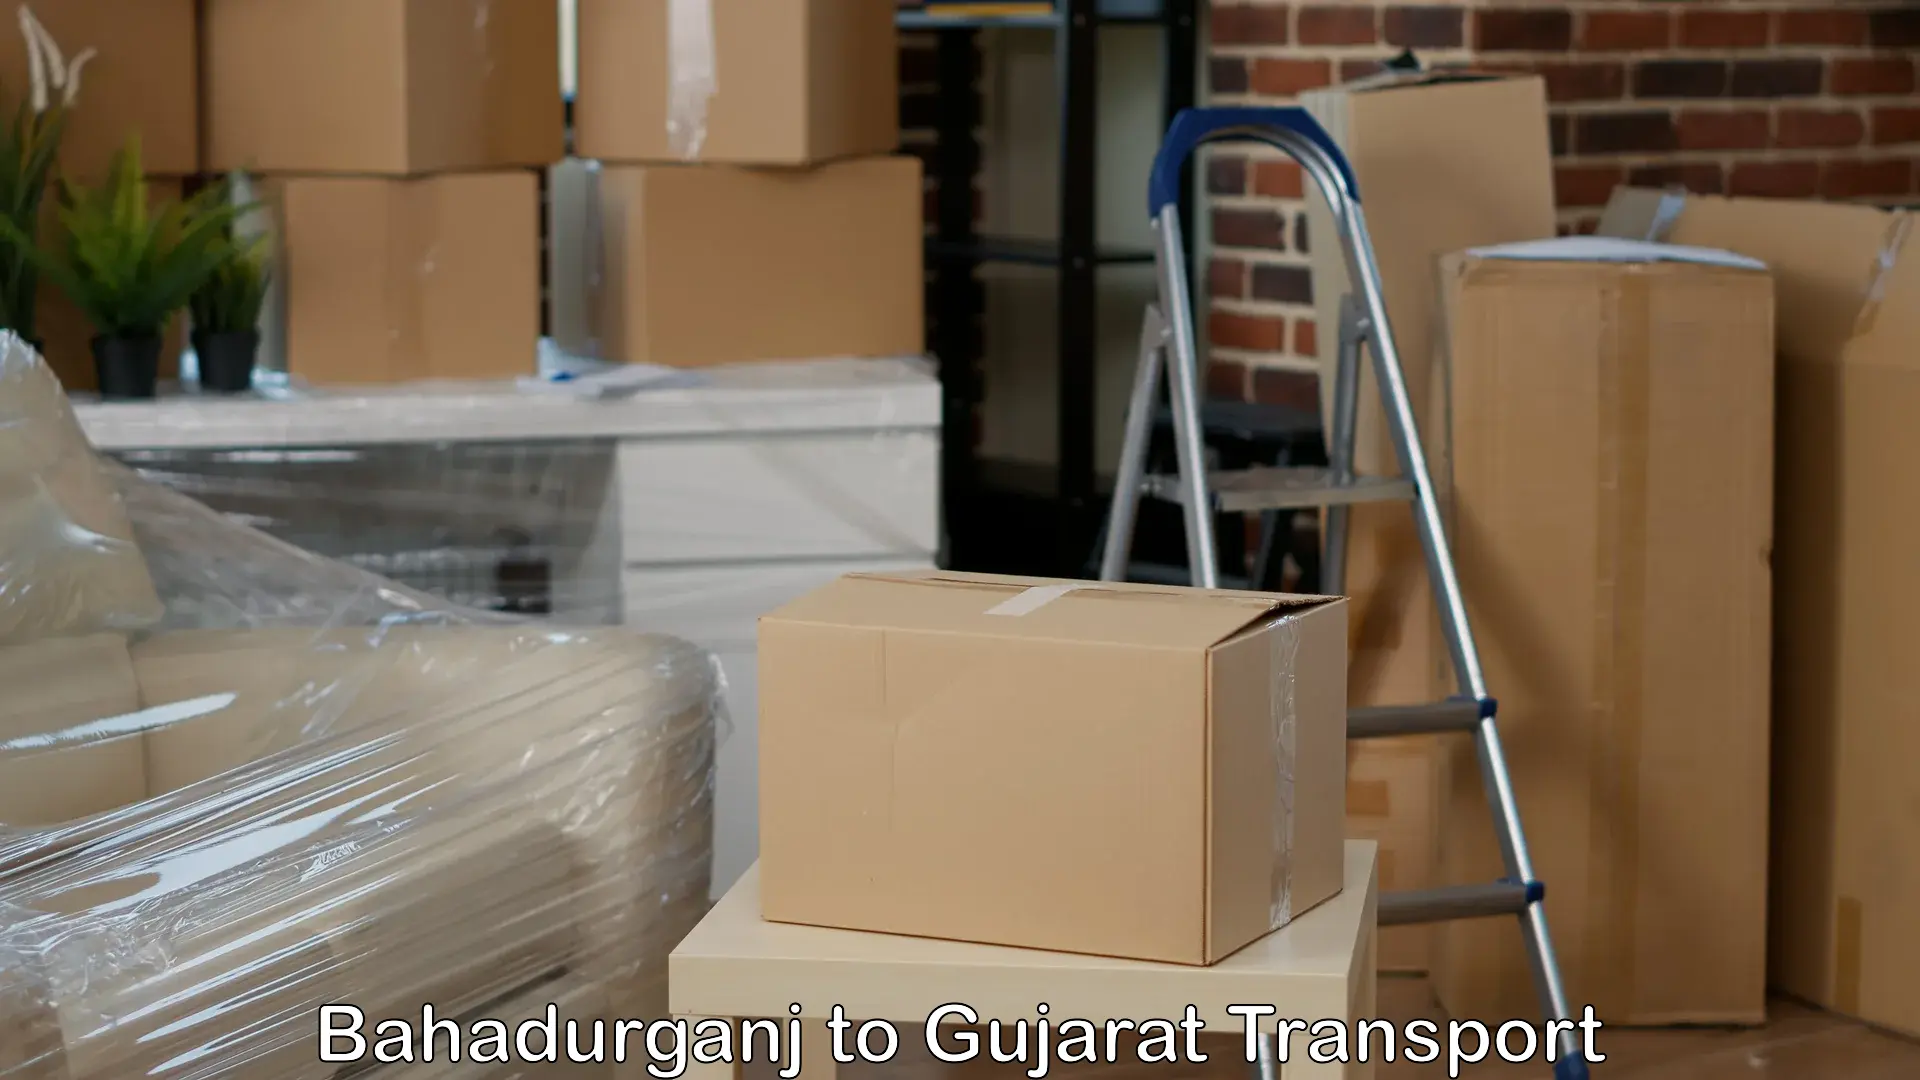 Air freight transport services Bahadurganj to Kutiyana